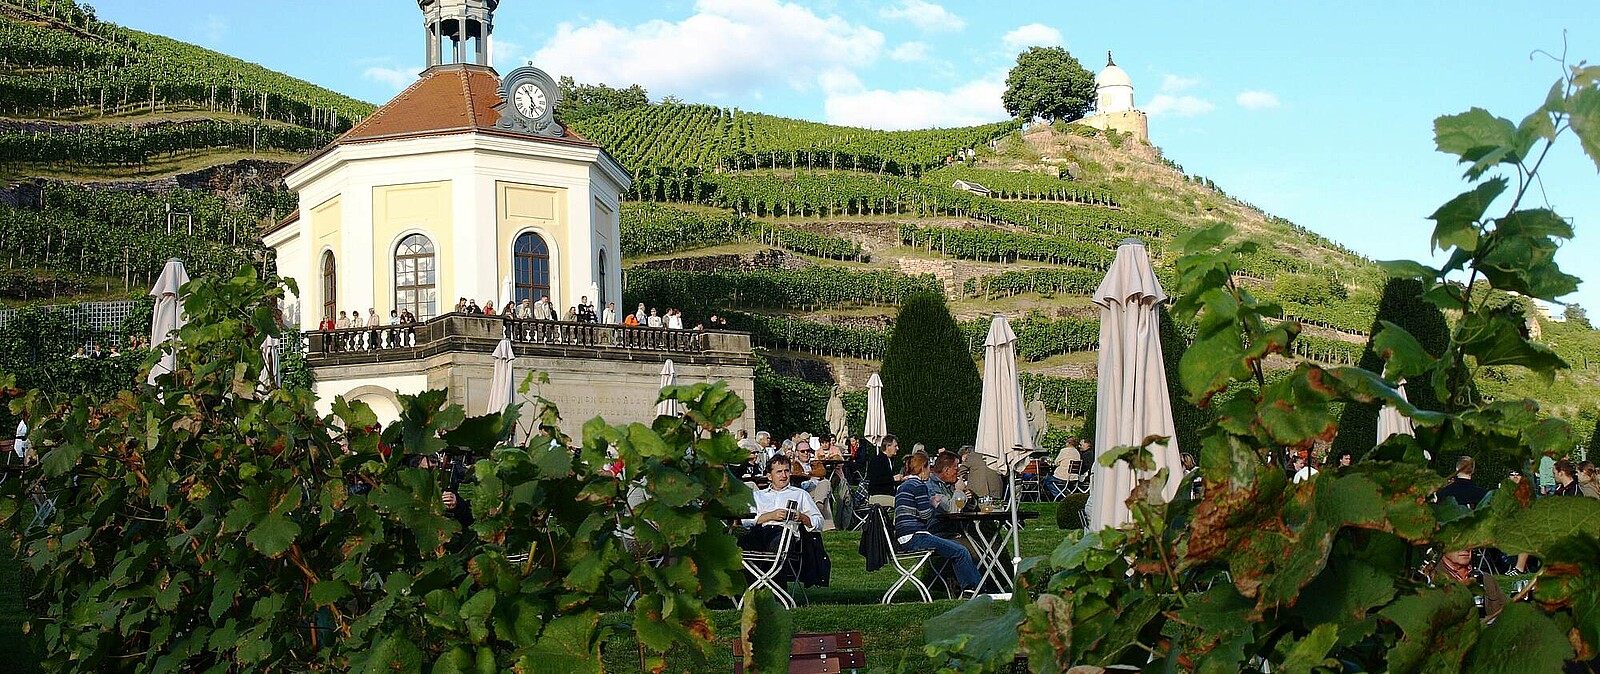 Ziel unserer Reise ist das Sächsische Staatsweingut Schloss Wackerbarth im Herzen der Sächsischen Weinstraße